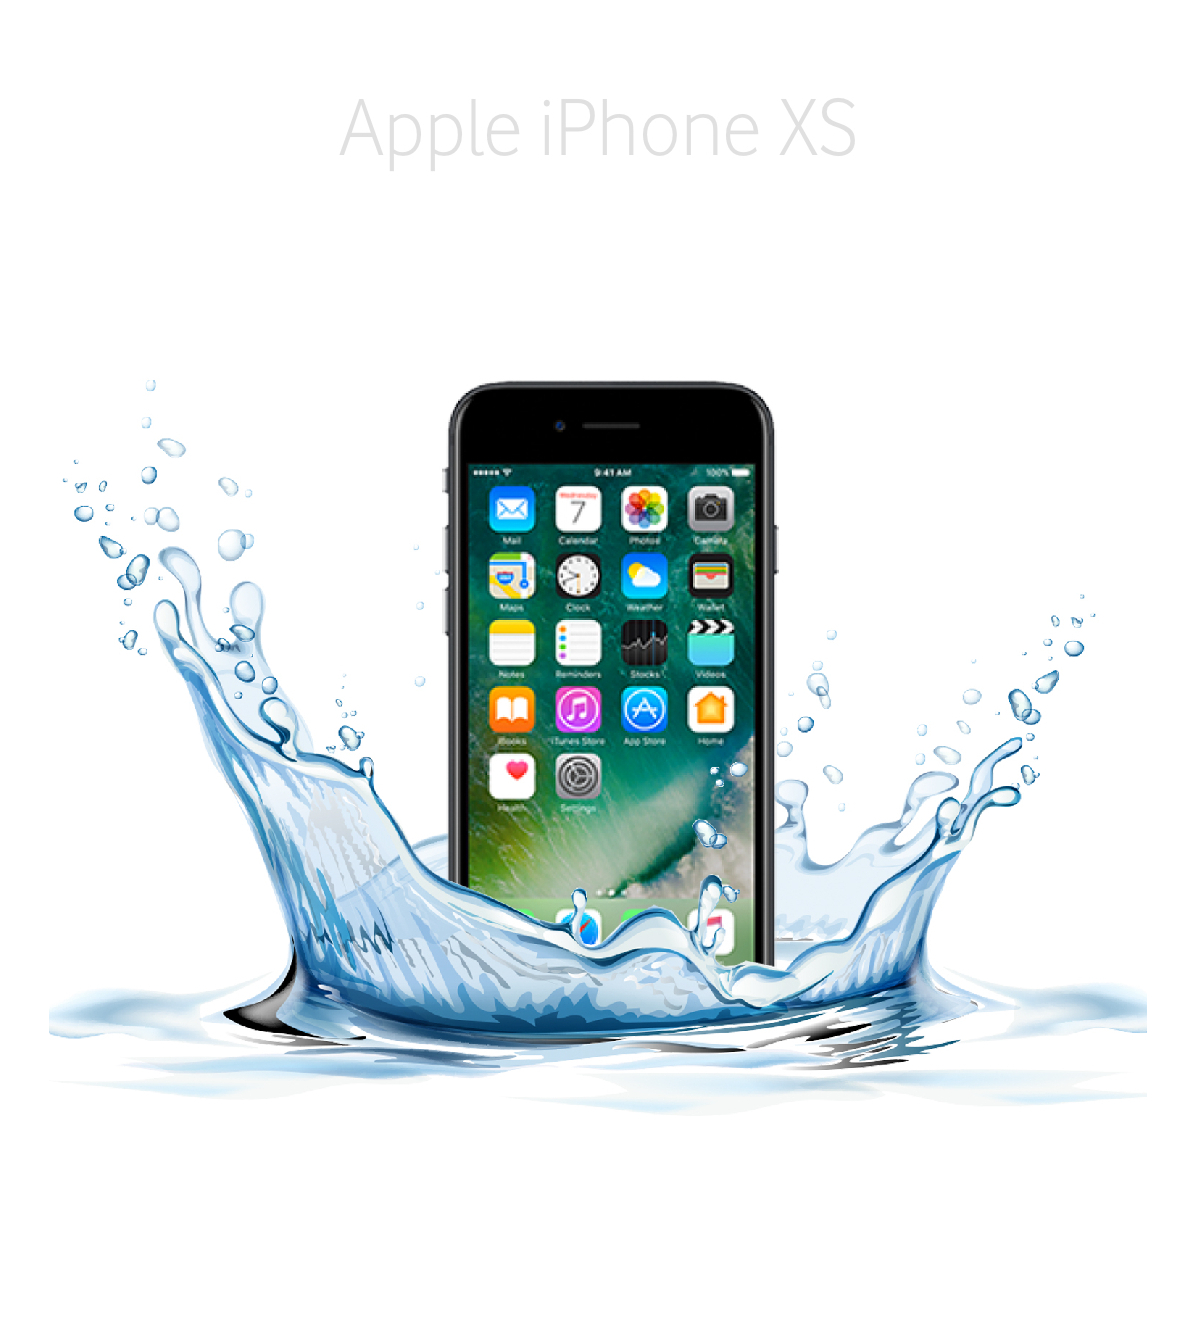 Laga fuktvattenskadad iPhone Xs